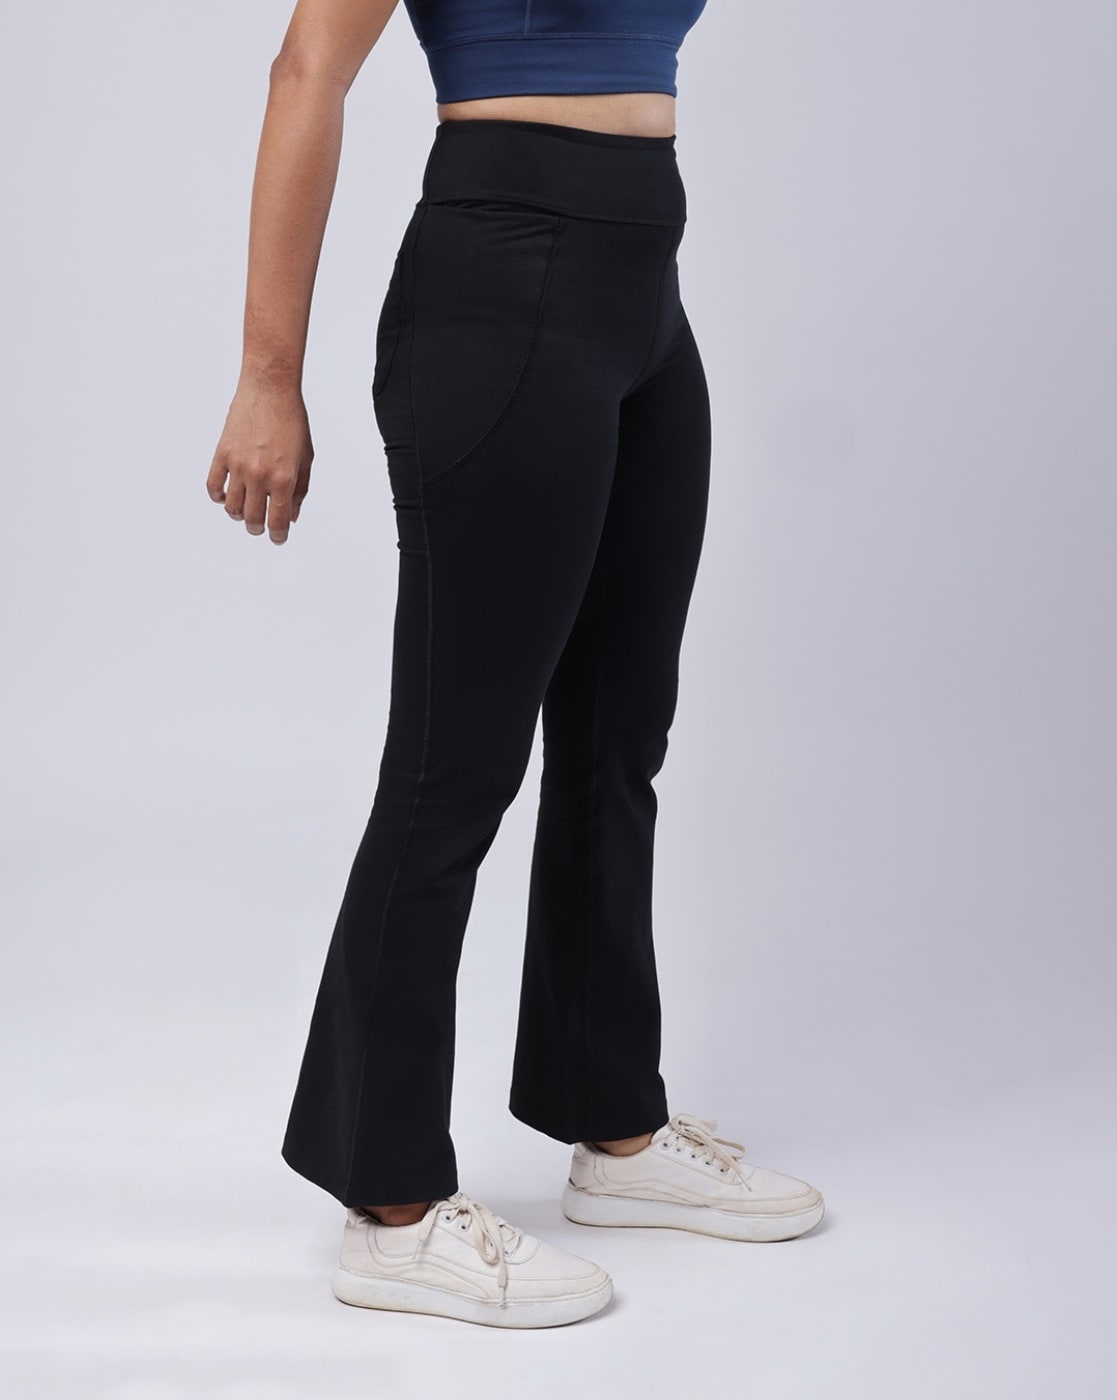 Buy Black Trousers & Pants for Women by BLISSCLUB Online